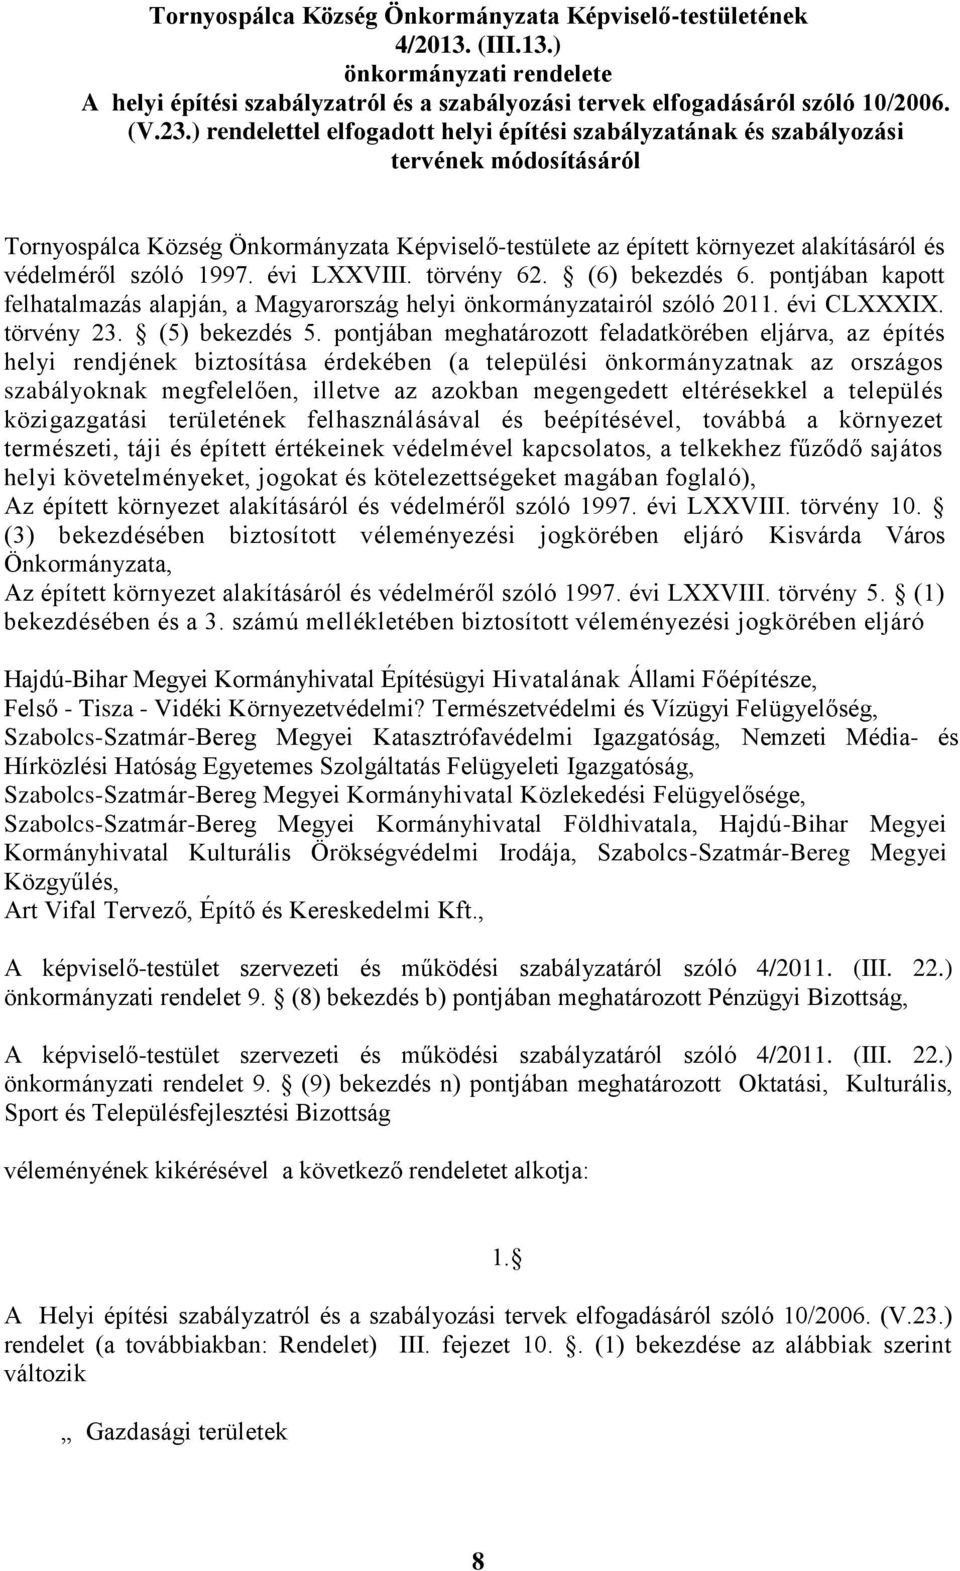 szóló 1997. évi LXXVIII. törvény 62. (6) bekezdés 6. pontjában kapott felhatalmazás alapján, a Magyarország helyi önkormányzatairól szóló 2011. évi CLXXXIX. törvény 23. (5) bekezdés 5.